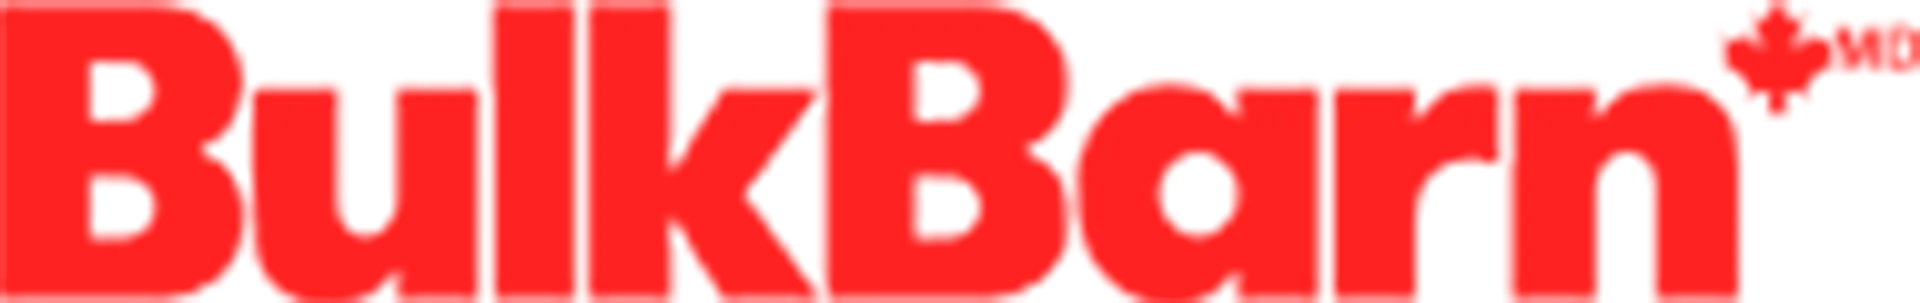 BULK BARN logo de circulaires